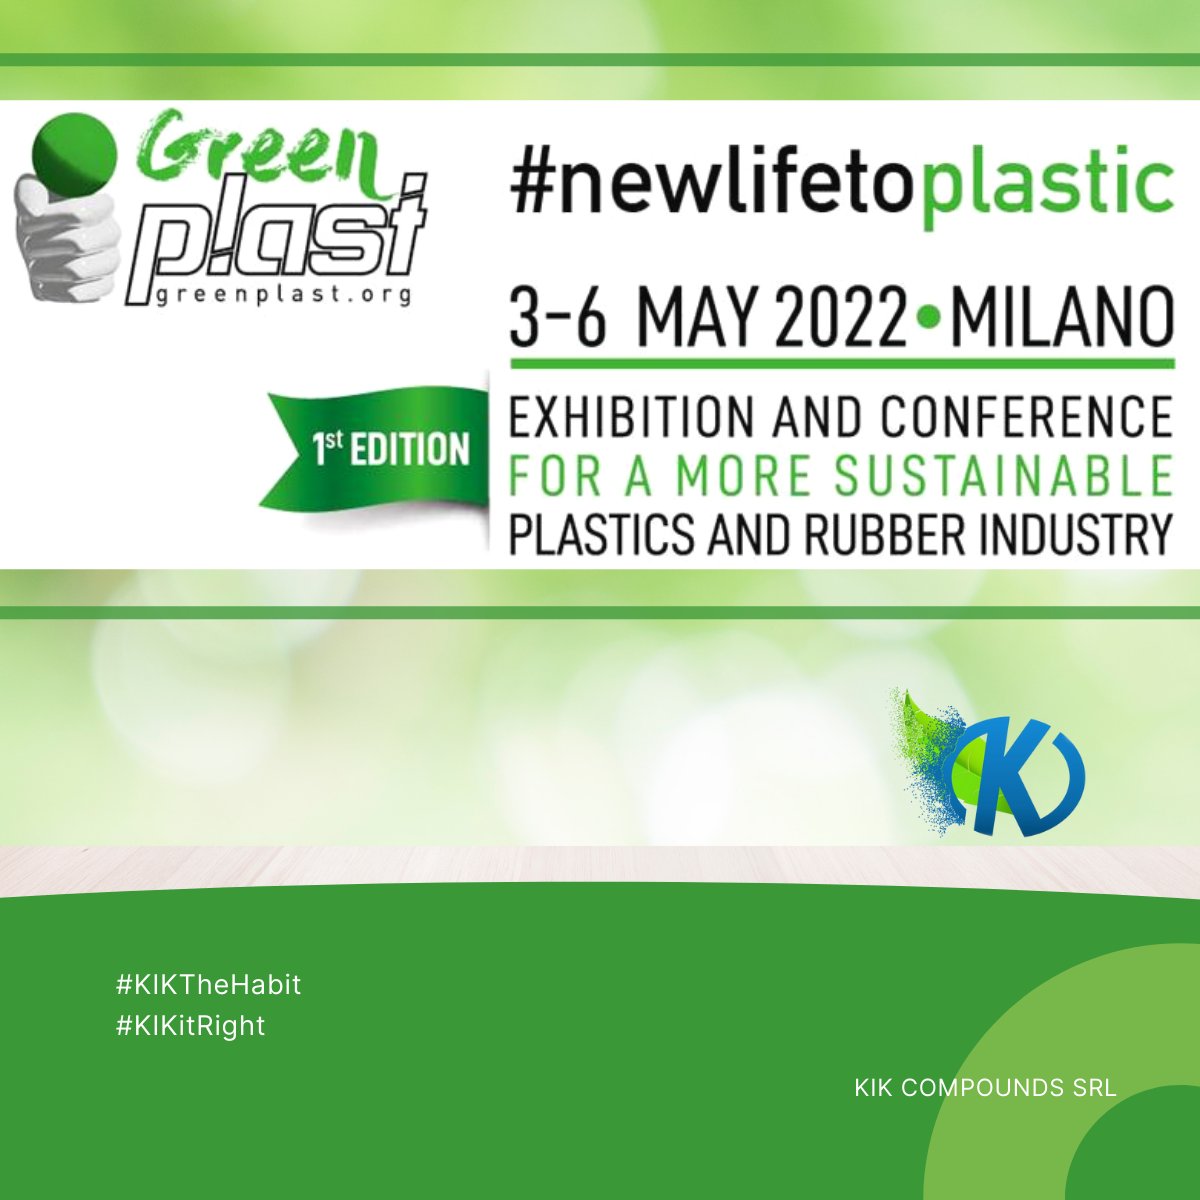 Siamo entusiasti di annunciare che KIK Compounds parteciperà alla fiera e conferenza internazionale GreenPlast dal 3 al 6 maggio!
Vieni a trovarci al Padiglione 14BStand B12,e saremo felici di mostrarti le nostre soluzioni di ecobioplastica biodegradabile.#KIKTheHabit #KIKitRight